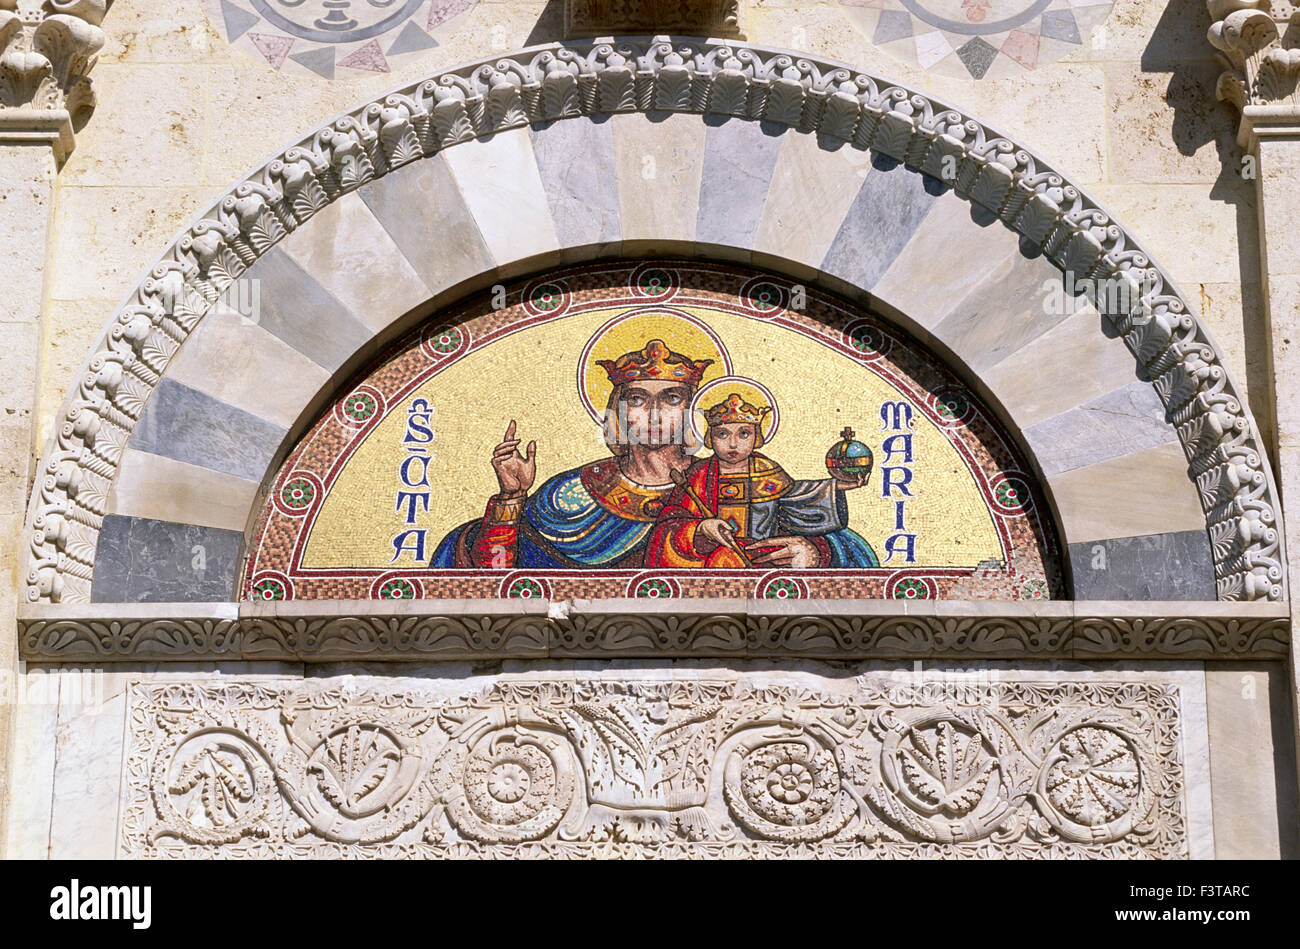 Italie, Sardaigne, Cagliari, cathédrale, mosaïque au-dessus de la porte d'entrée Banque D'Images